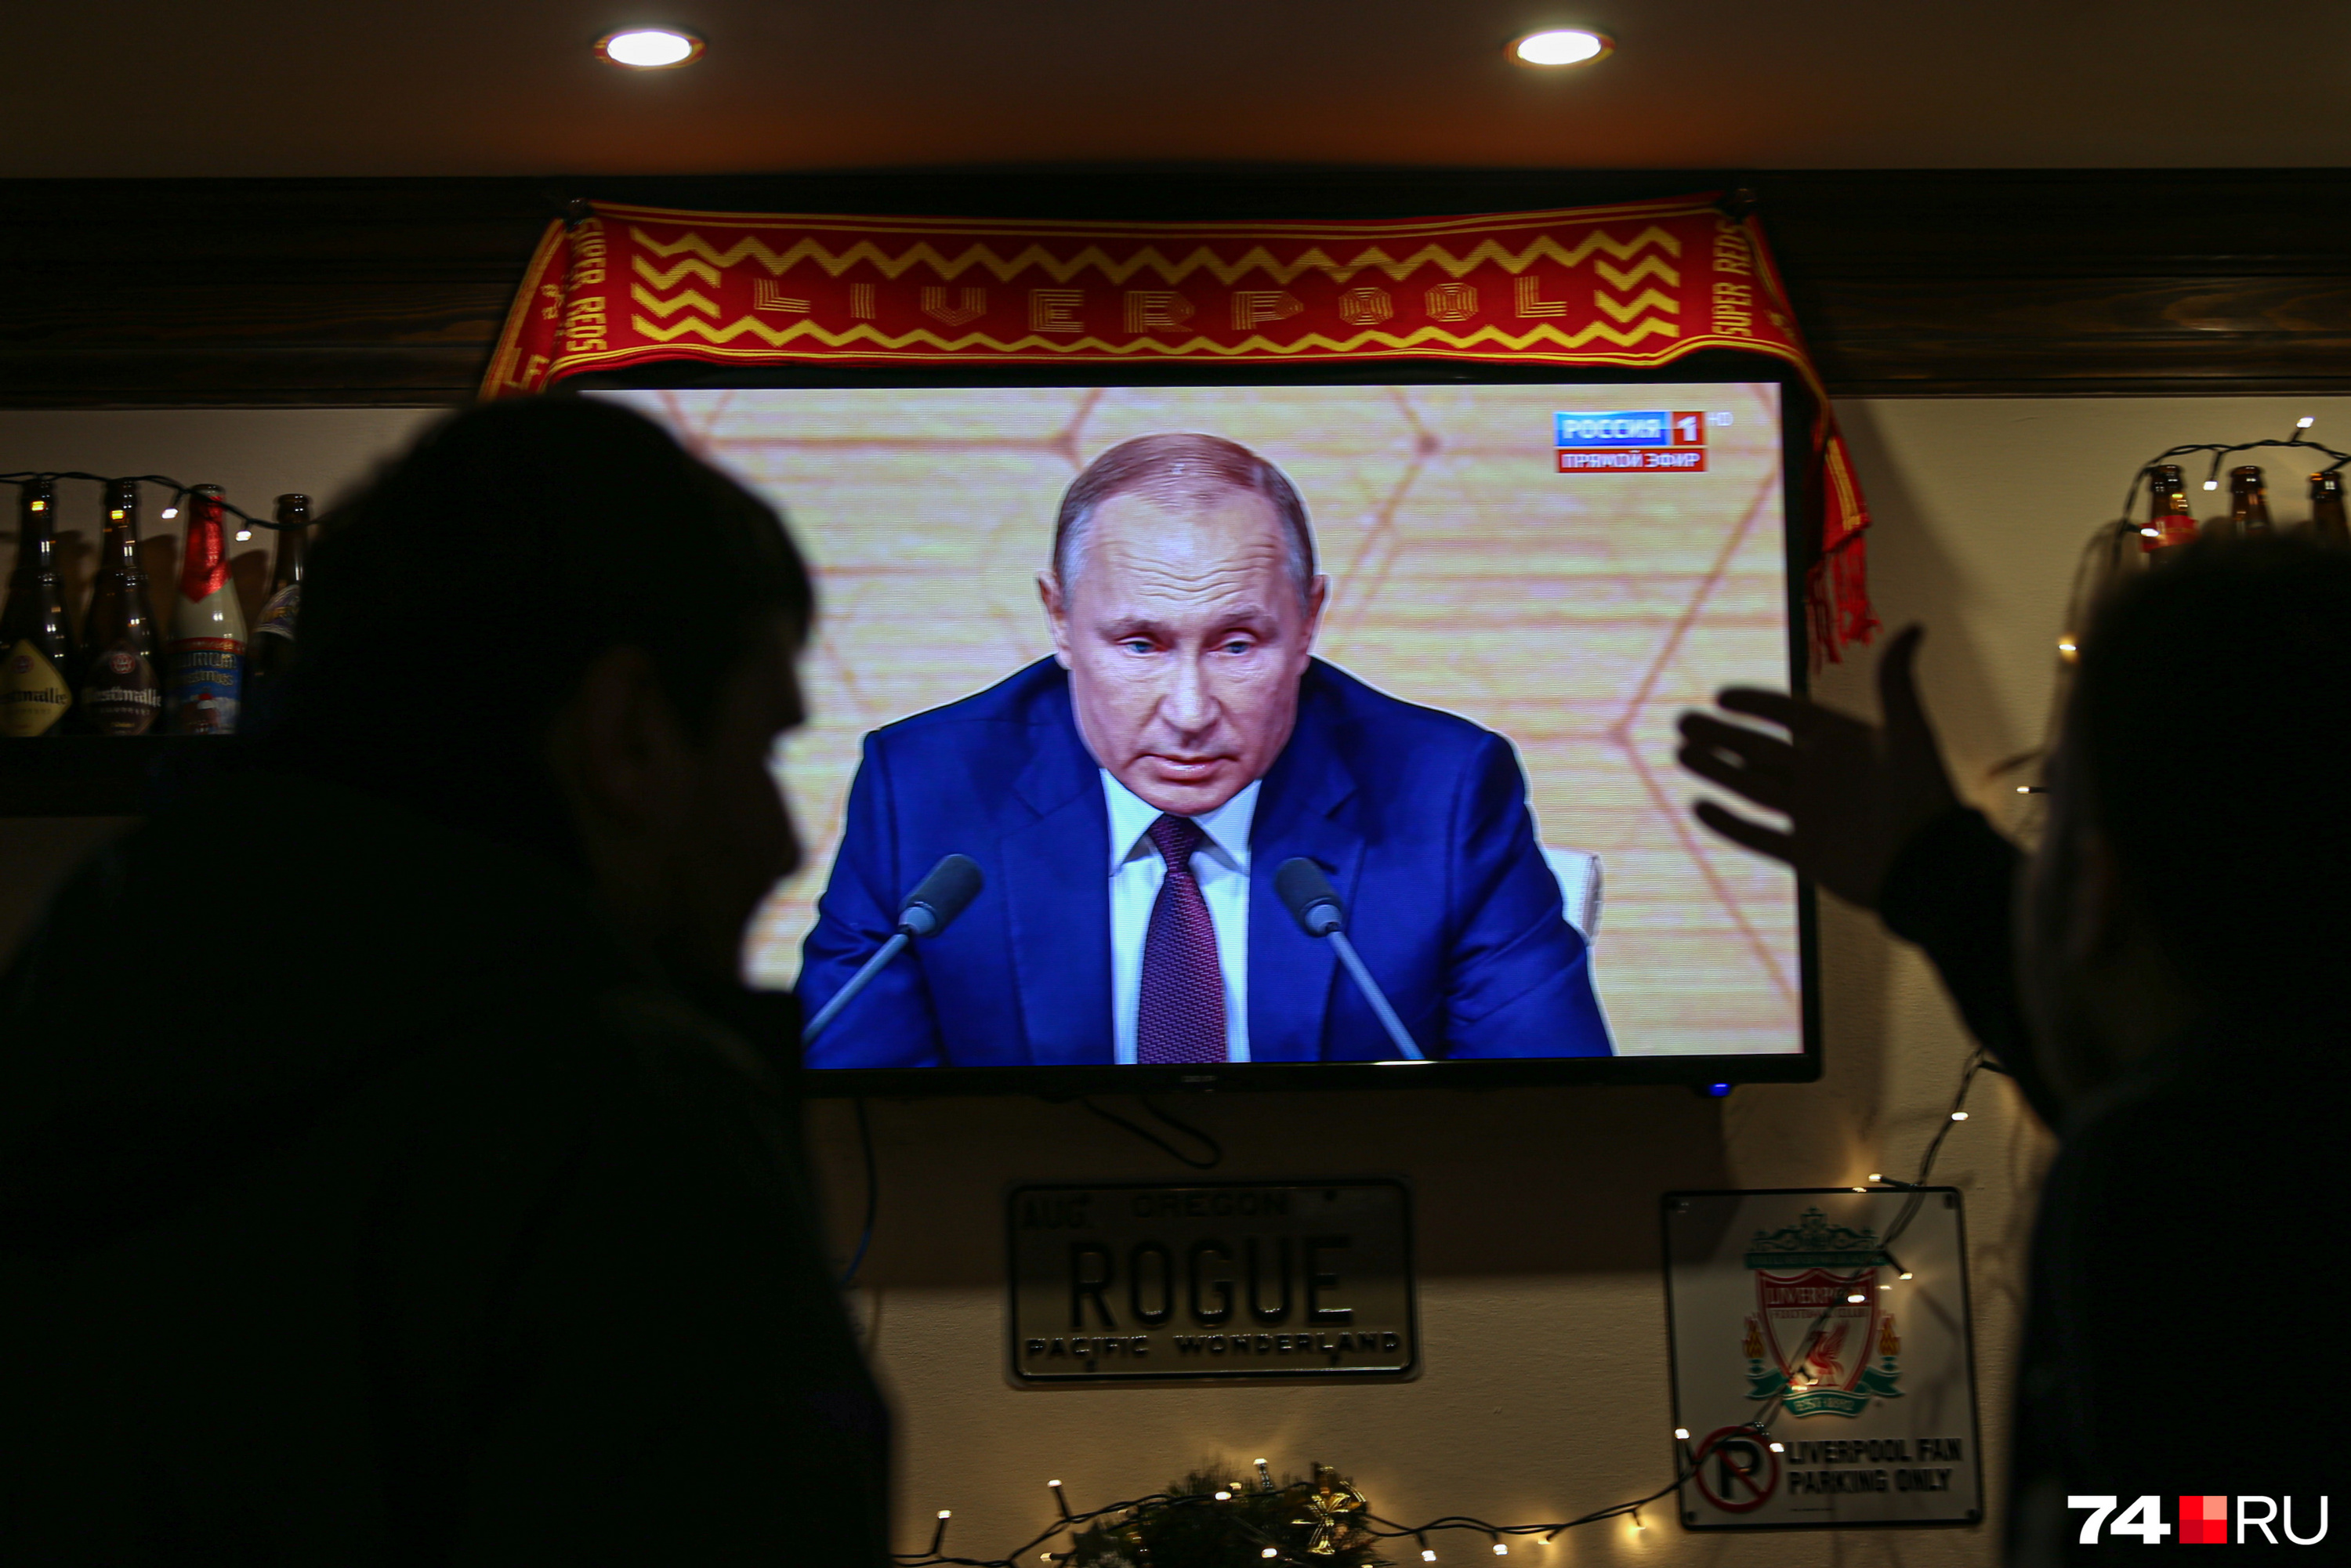 Фанаты из спортбара пытались достучаться до Путина через экран телевизора, но у президента и без того было много гостей